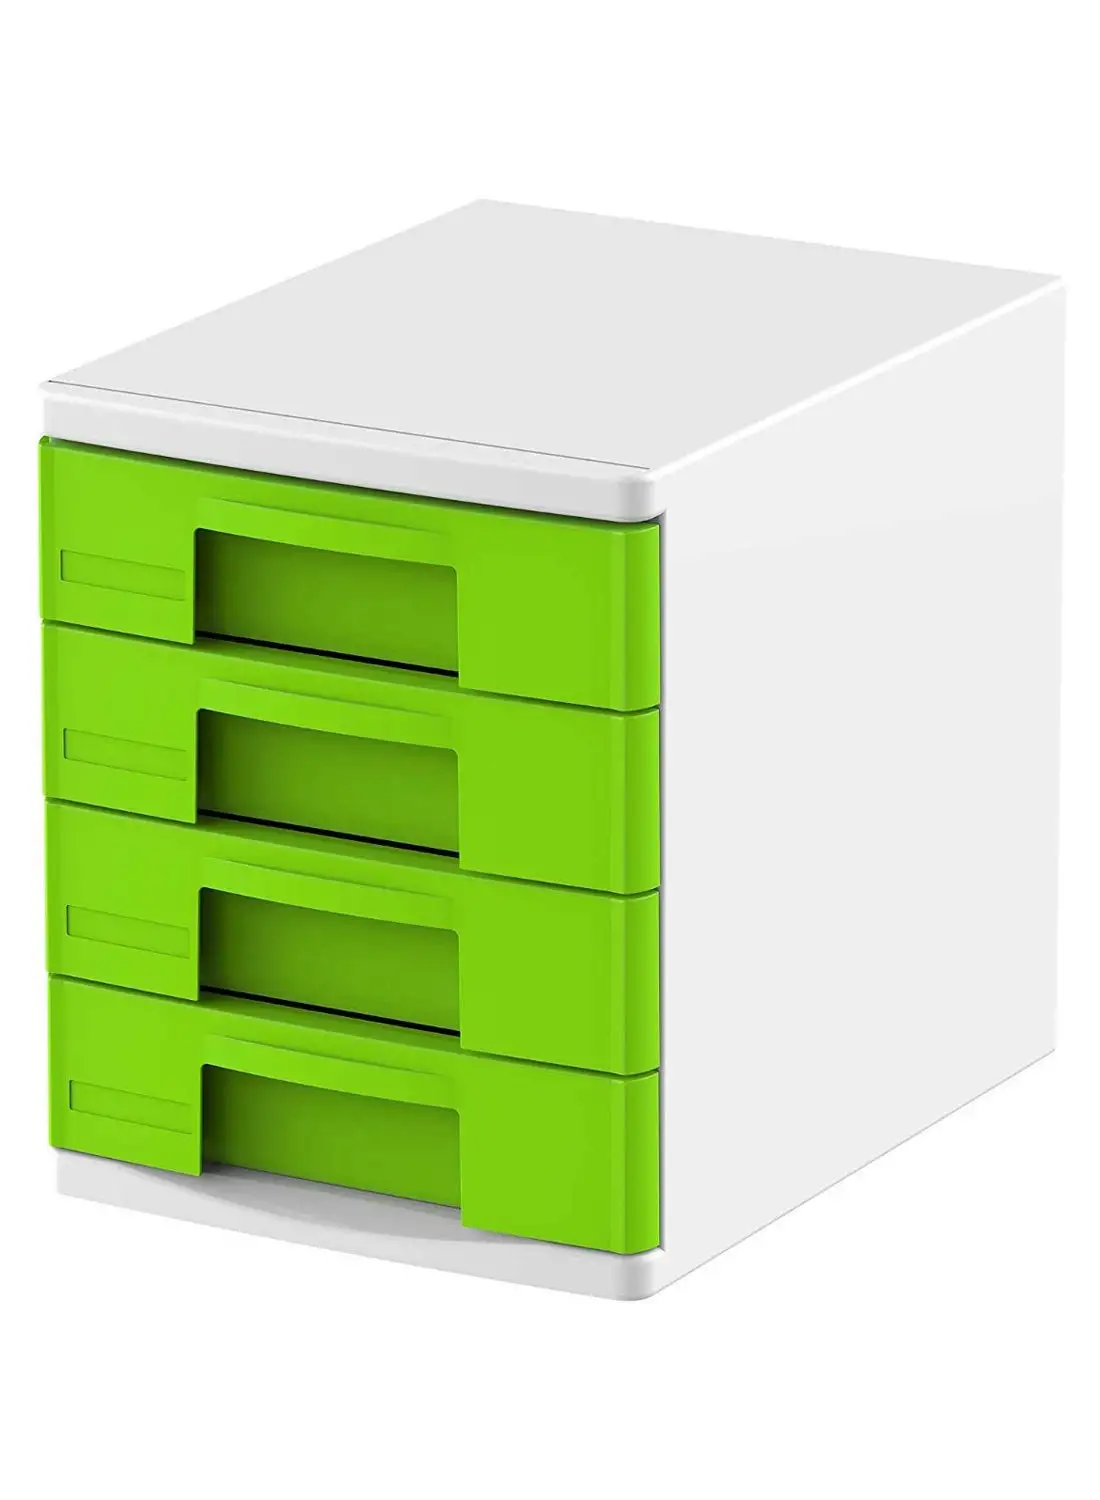 خزانة ملفات 4 طبقات من كوزموبلاست A4 أدراج أخضر ليموني / أبيض